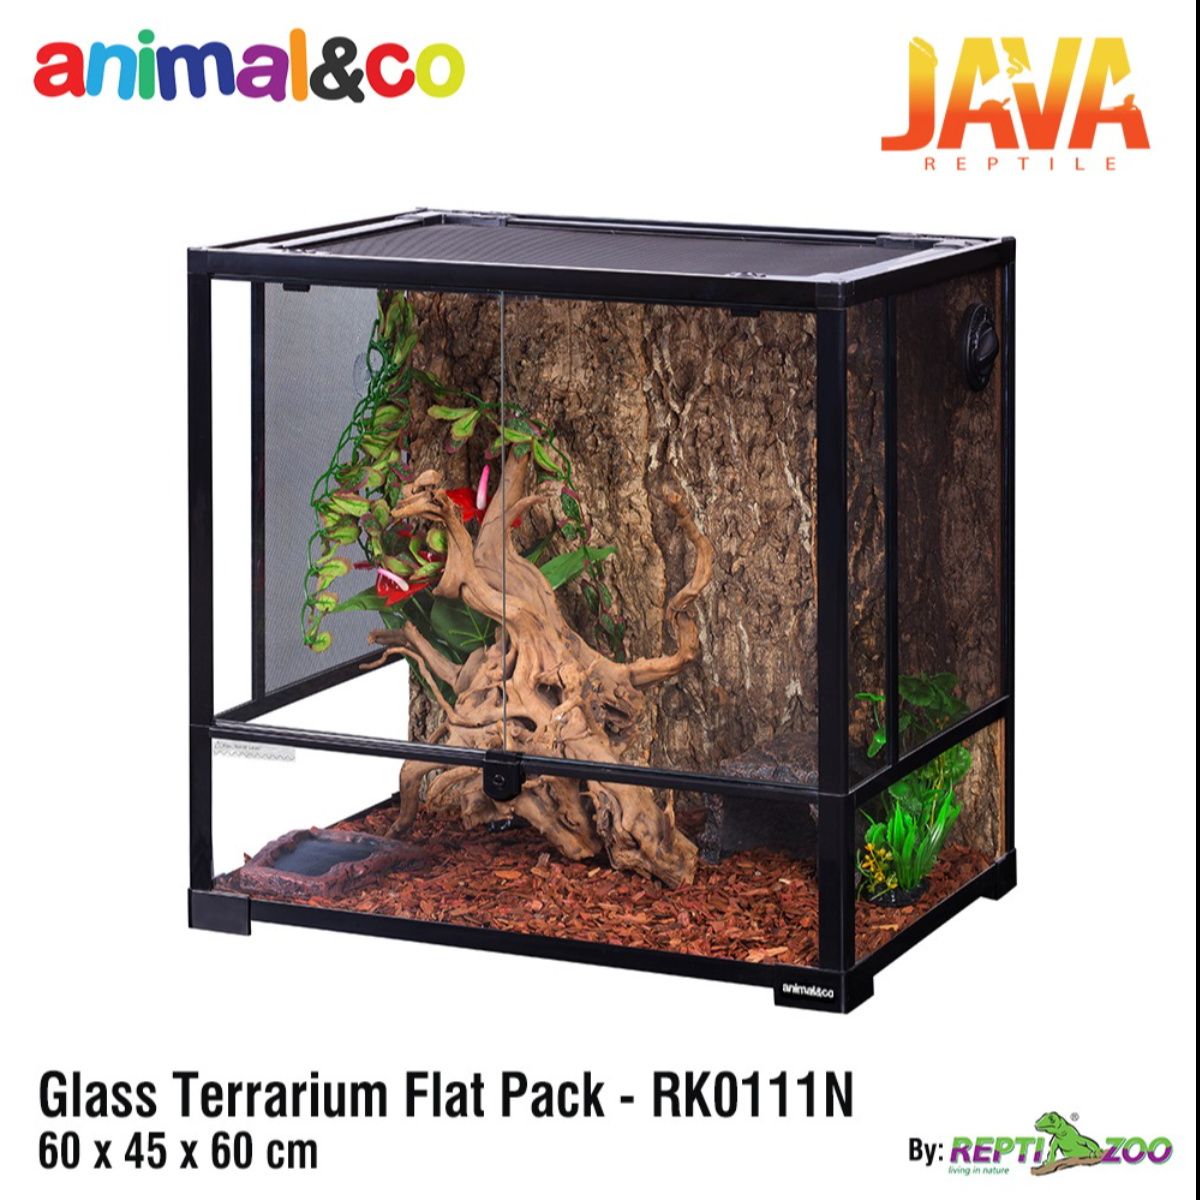 Animal&co Glass Terrarium 60x45x60cm by Reptizoo RK0111N